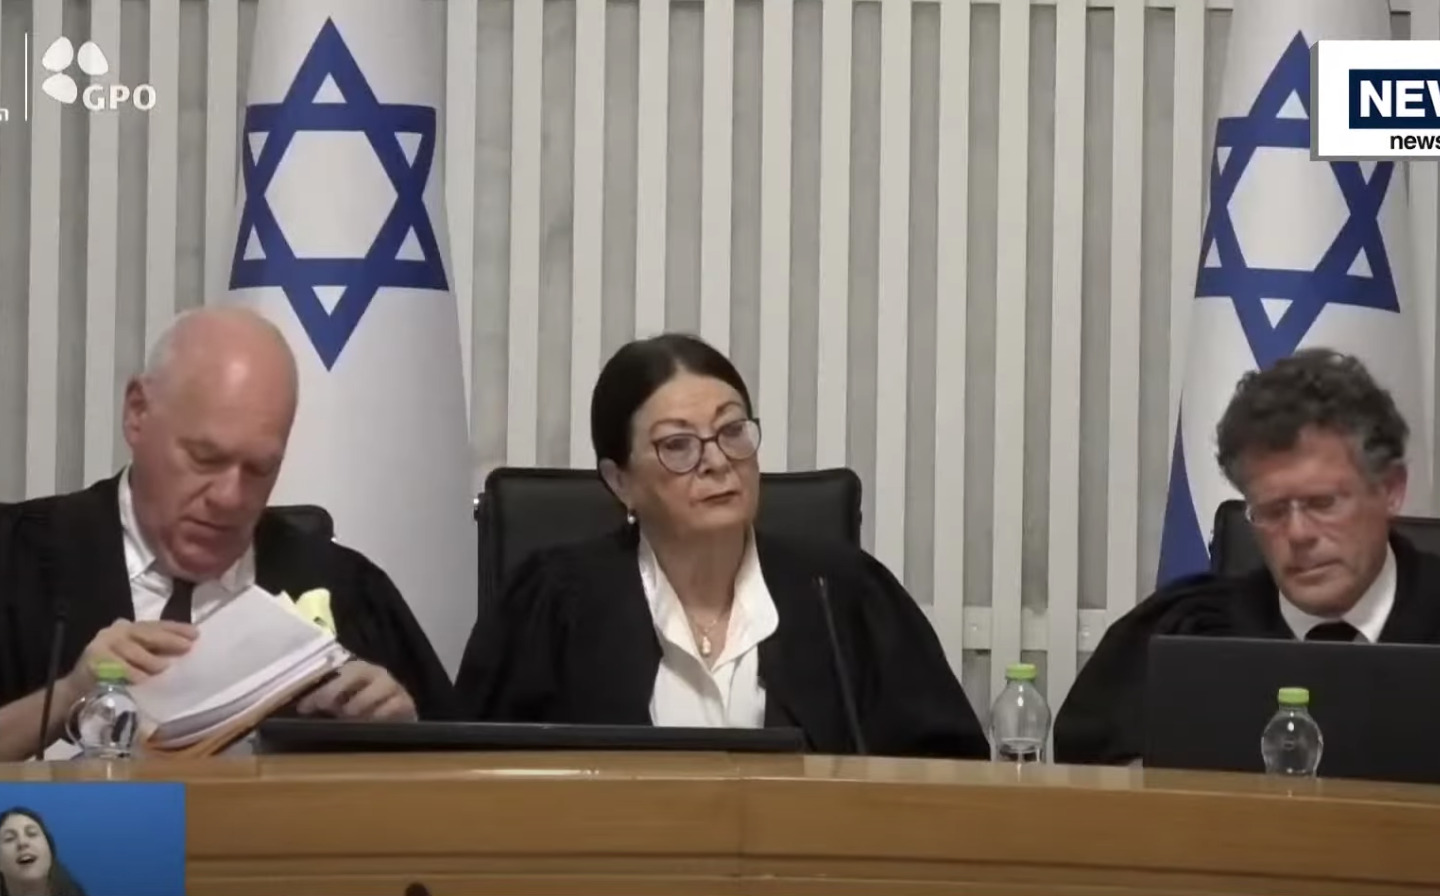 ‘Hooggerechtshof heeft sleutel van toekomst Israël in handen’